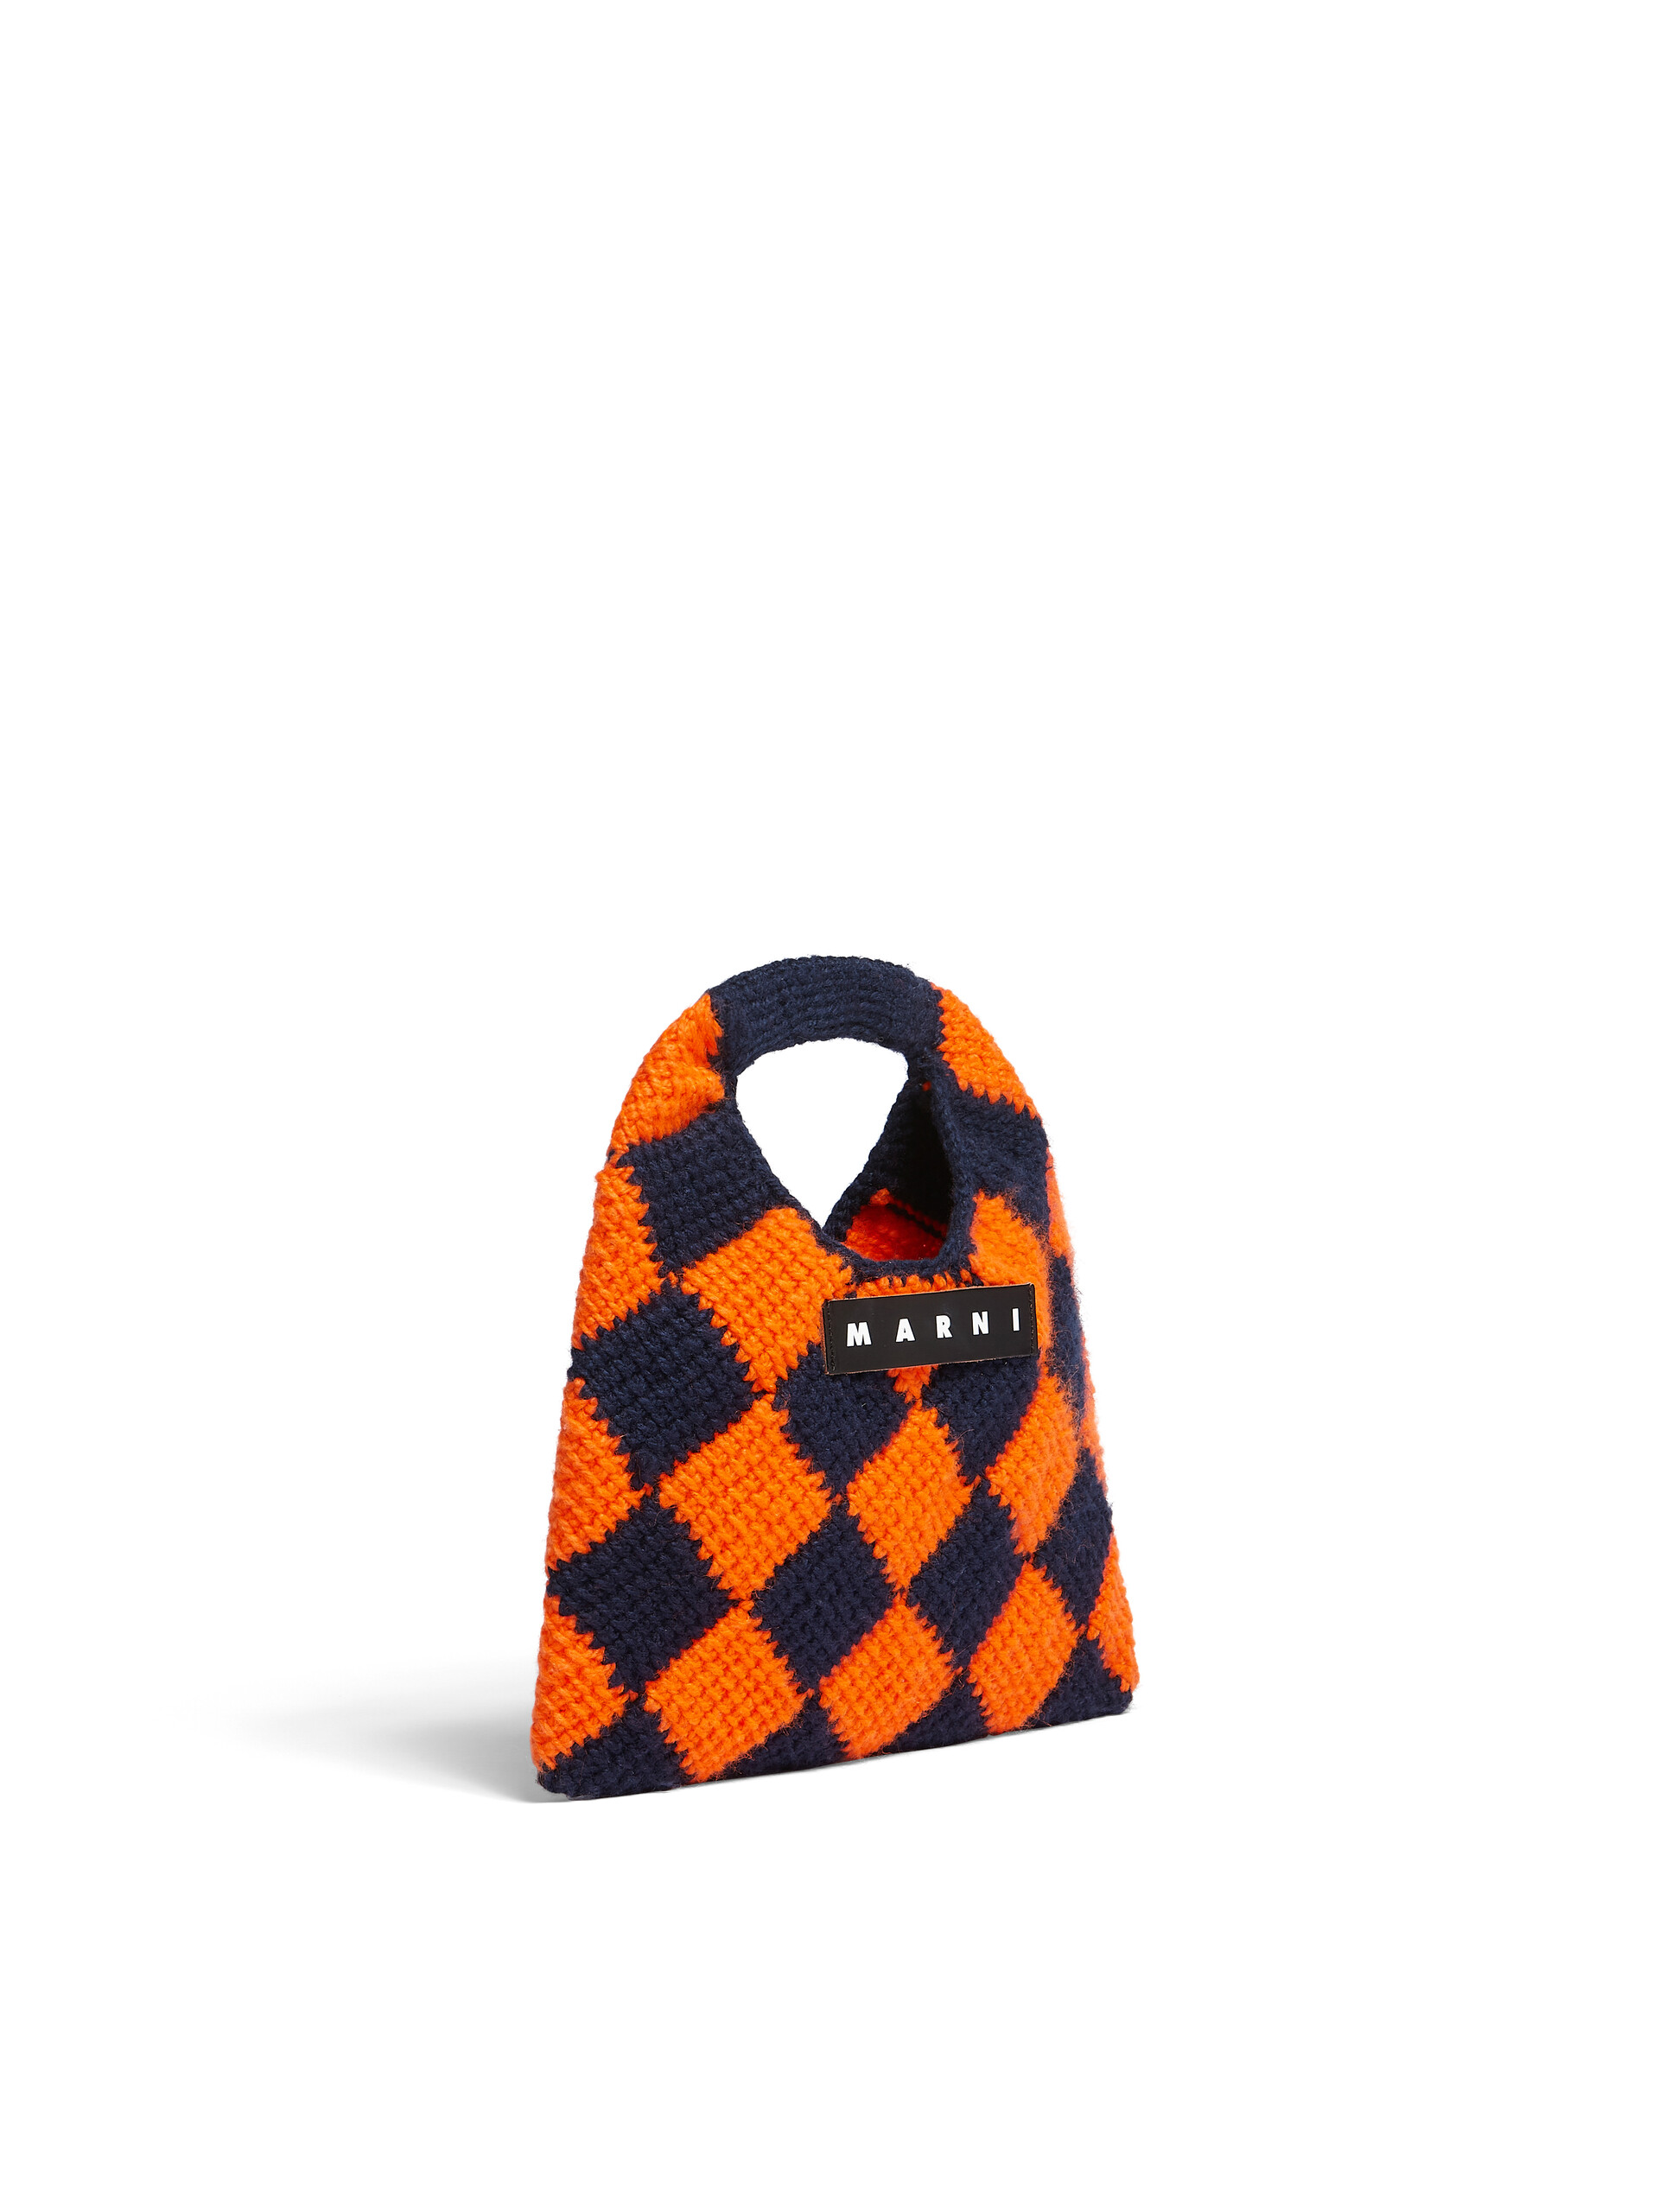 MARNI MARKET DIAMOND MINI bag in orange and blue tech wool - Bags - Image 2